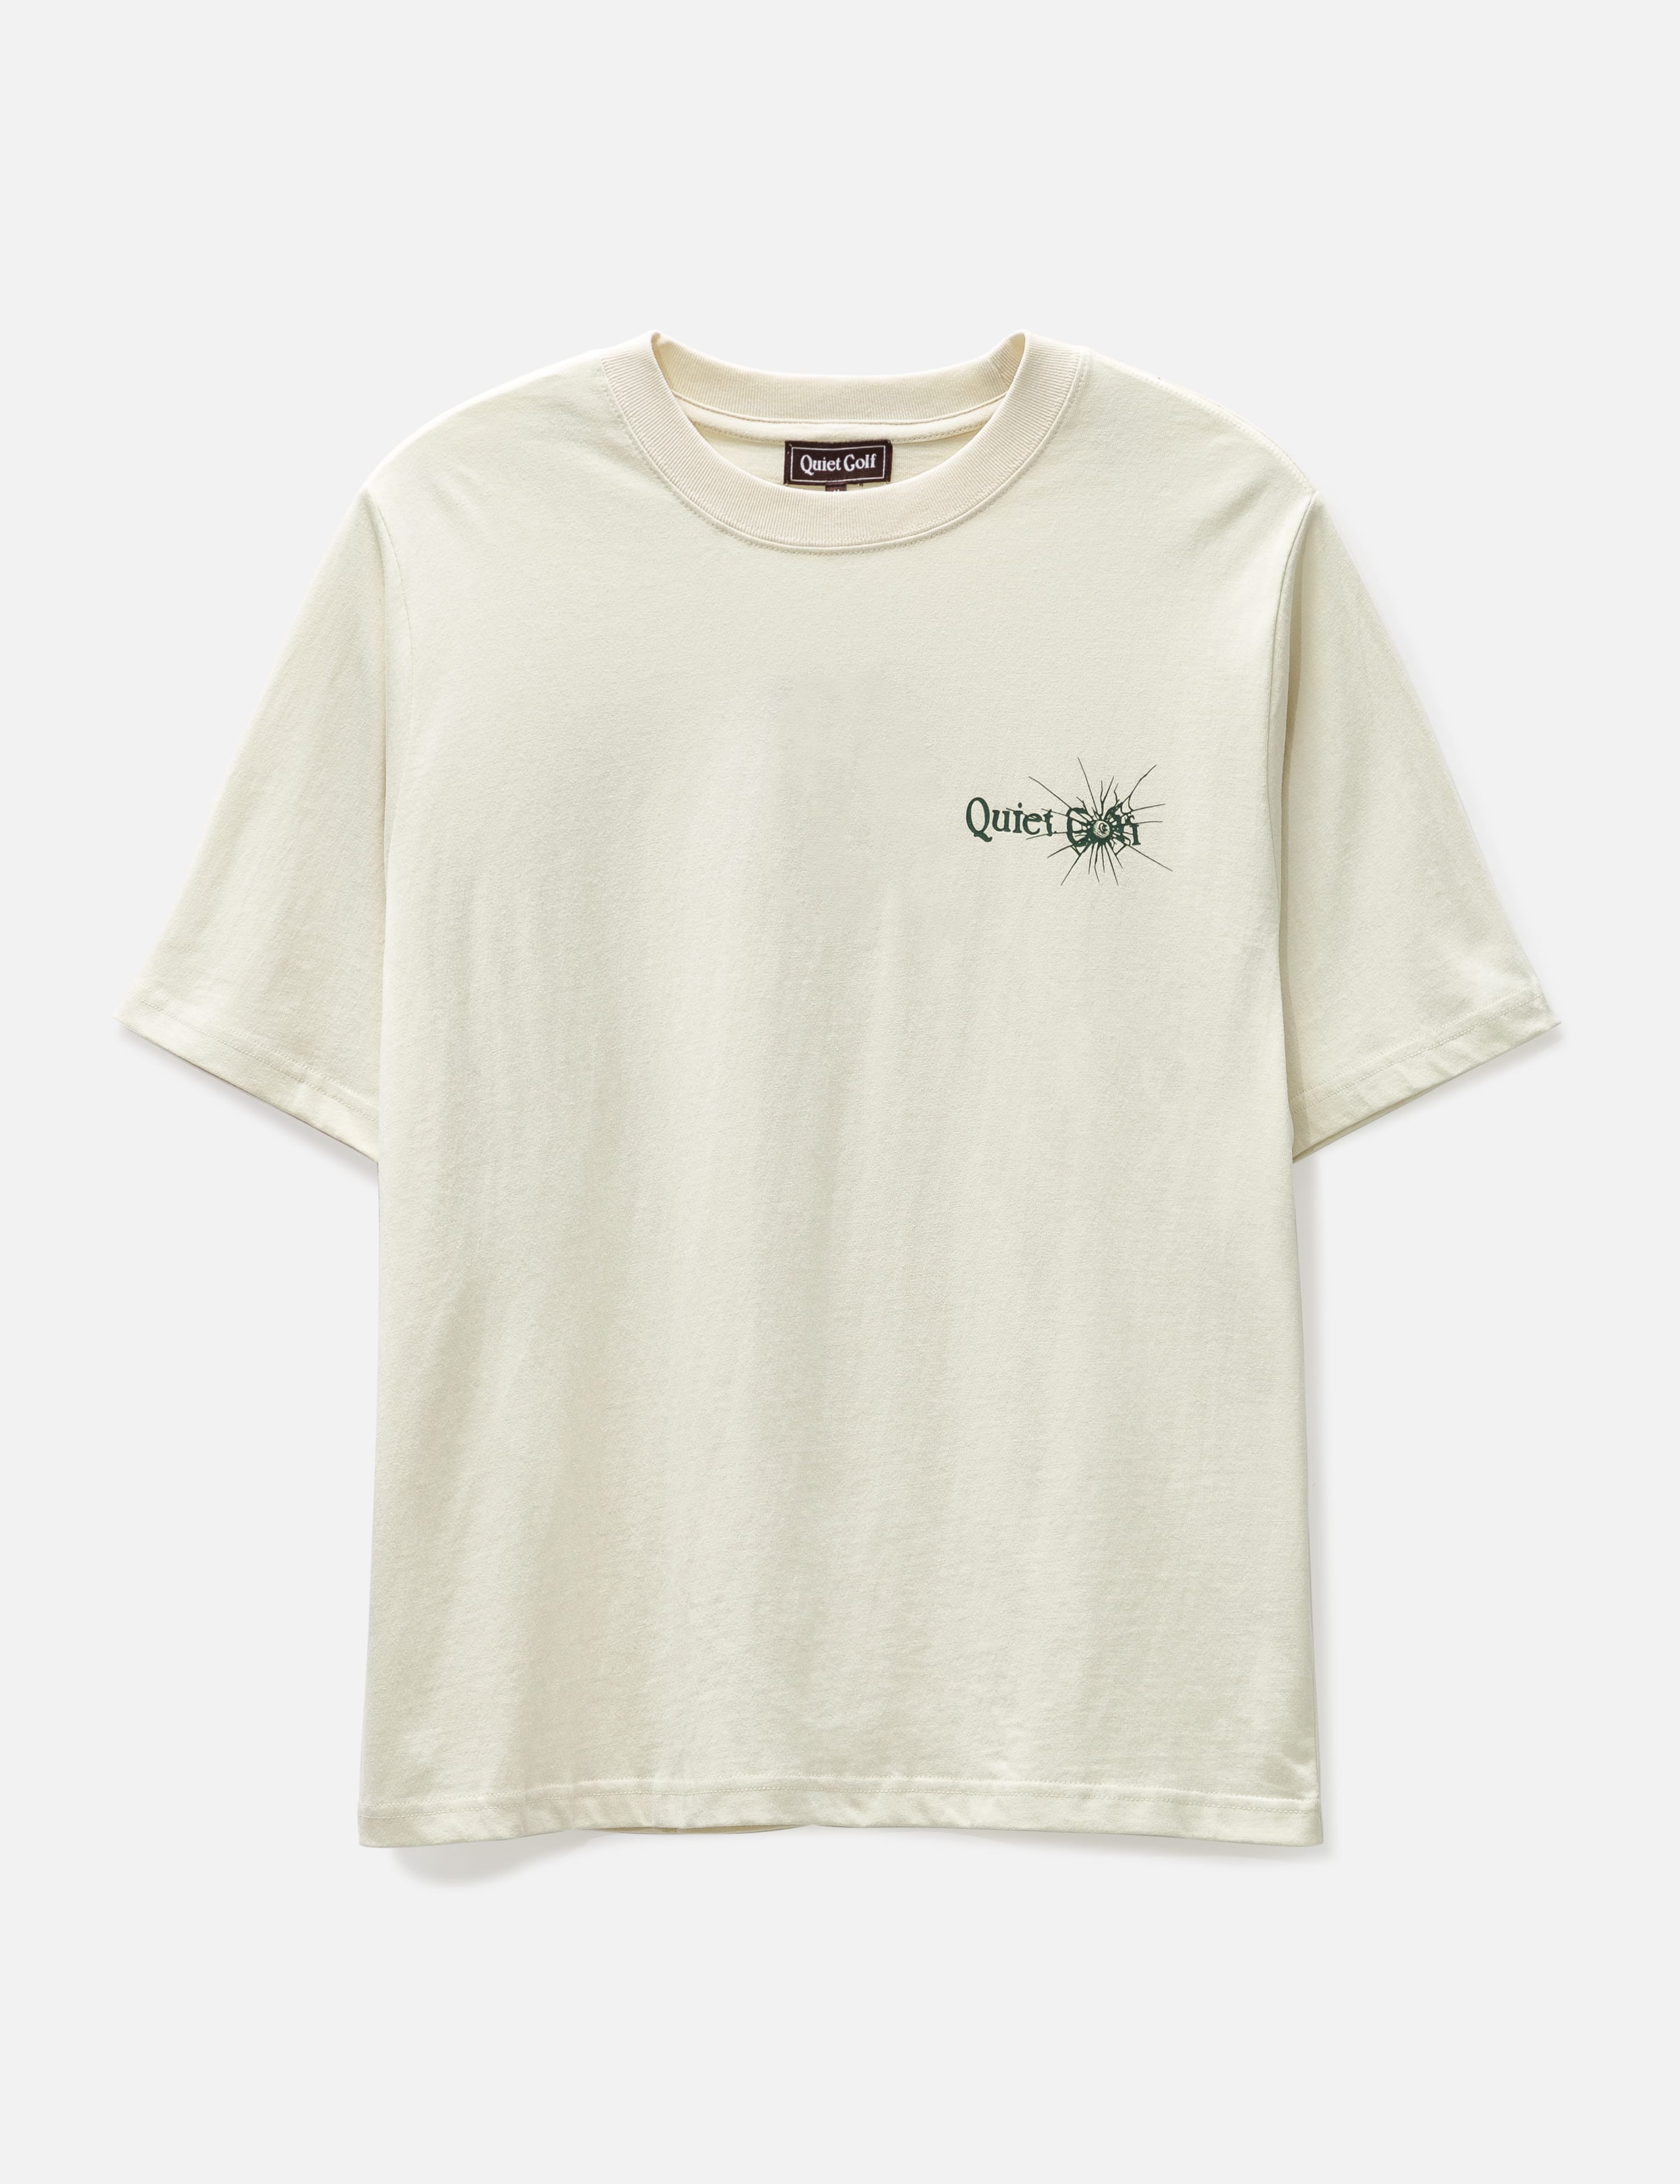 QUIET GOLF - Shatter T-shirt | HBX - HYPEBEAST 為您搜羅全球潮流